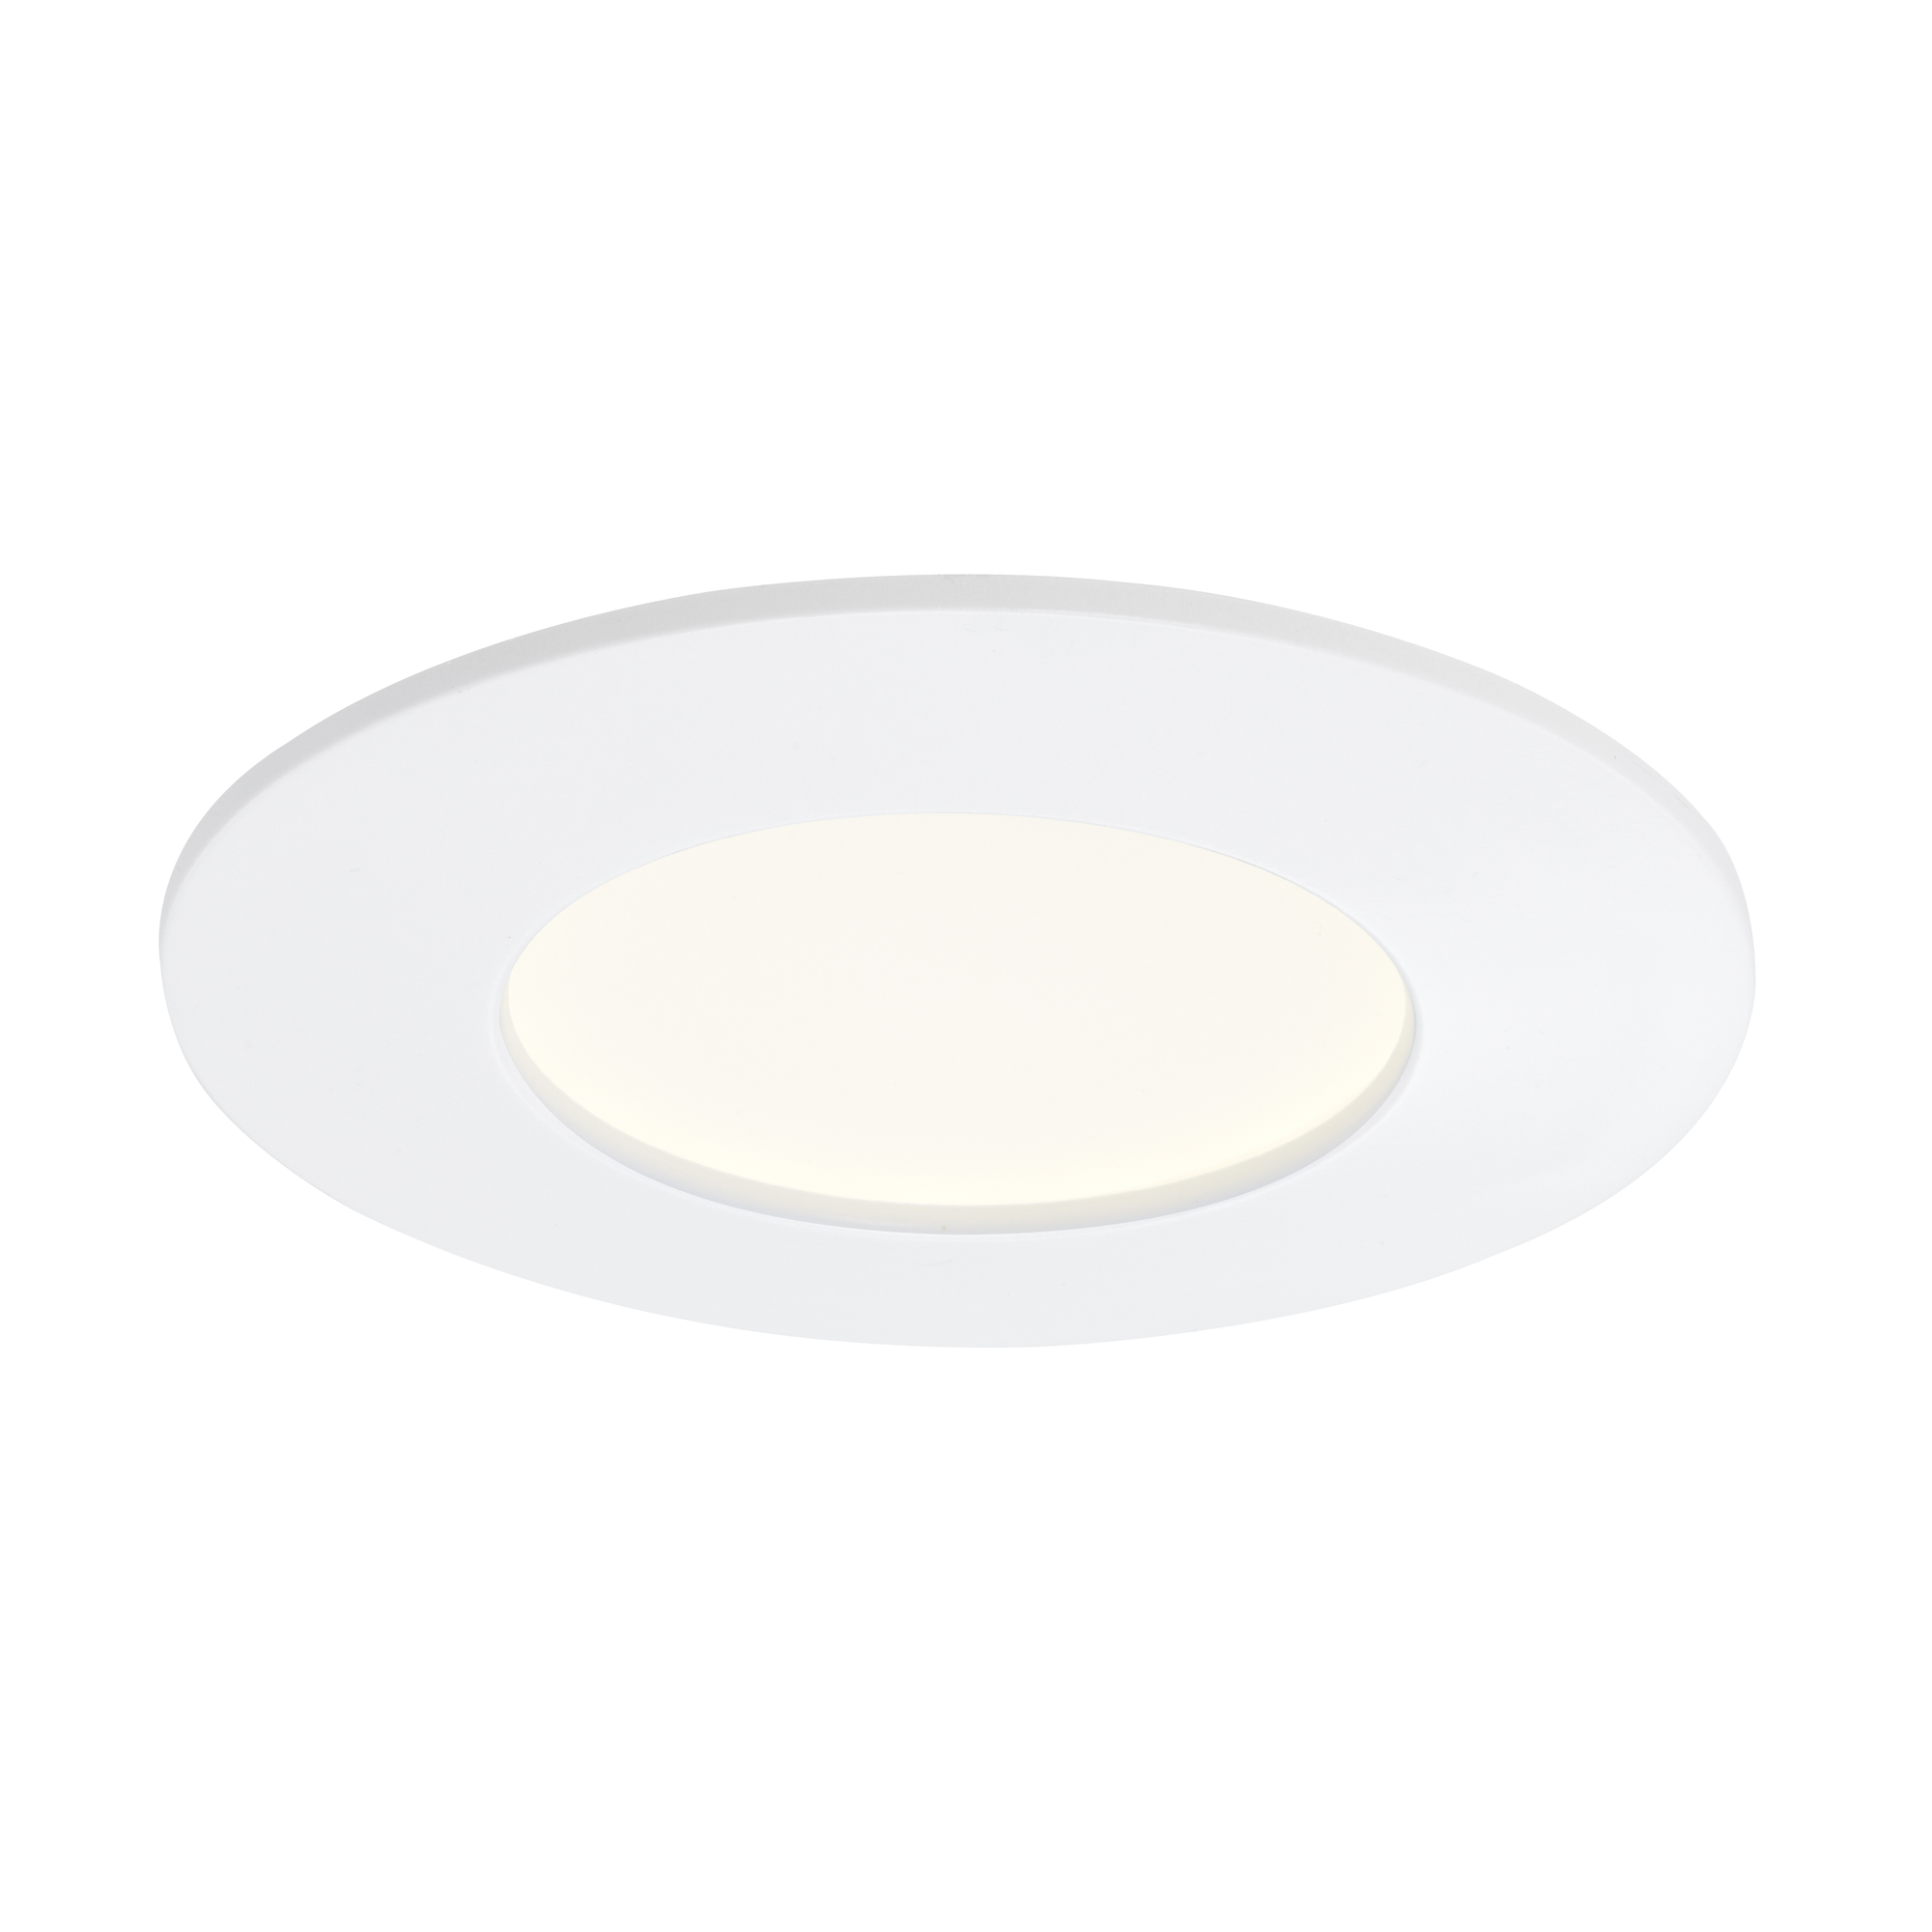 LED-Einbauleuchte 'Flat' weiß 6 W 3 Stück + product picture